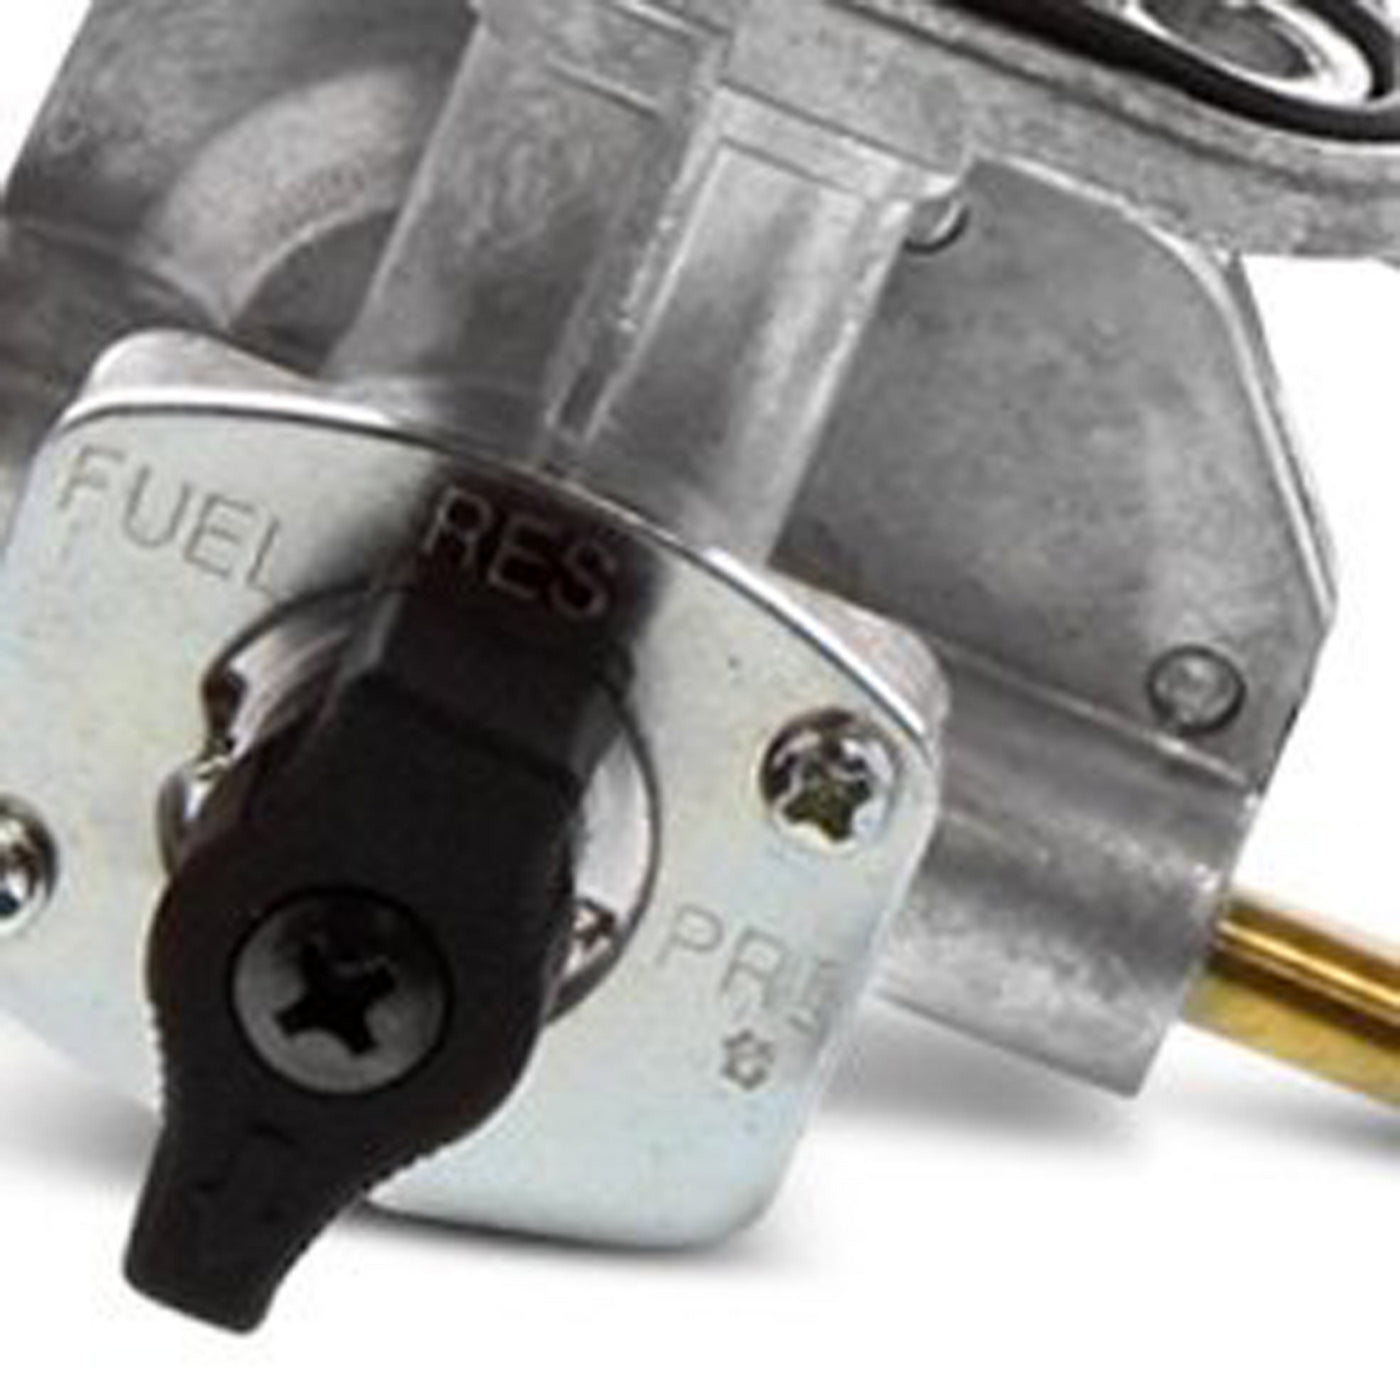 Fuel Star FS101-0122 Fuel Valve Kit #FS101-0122